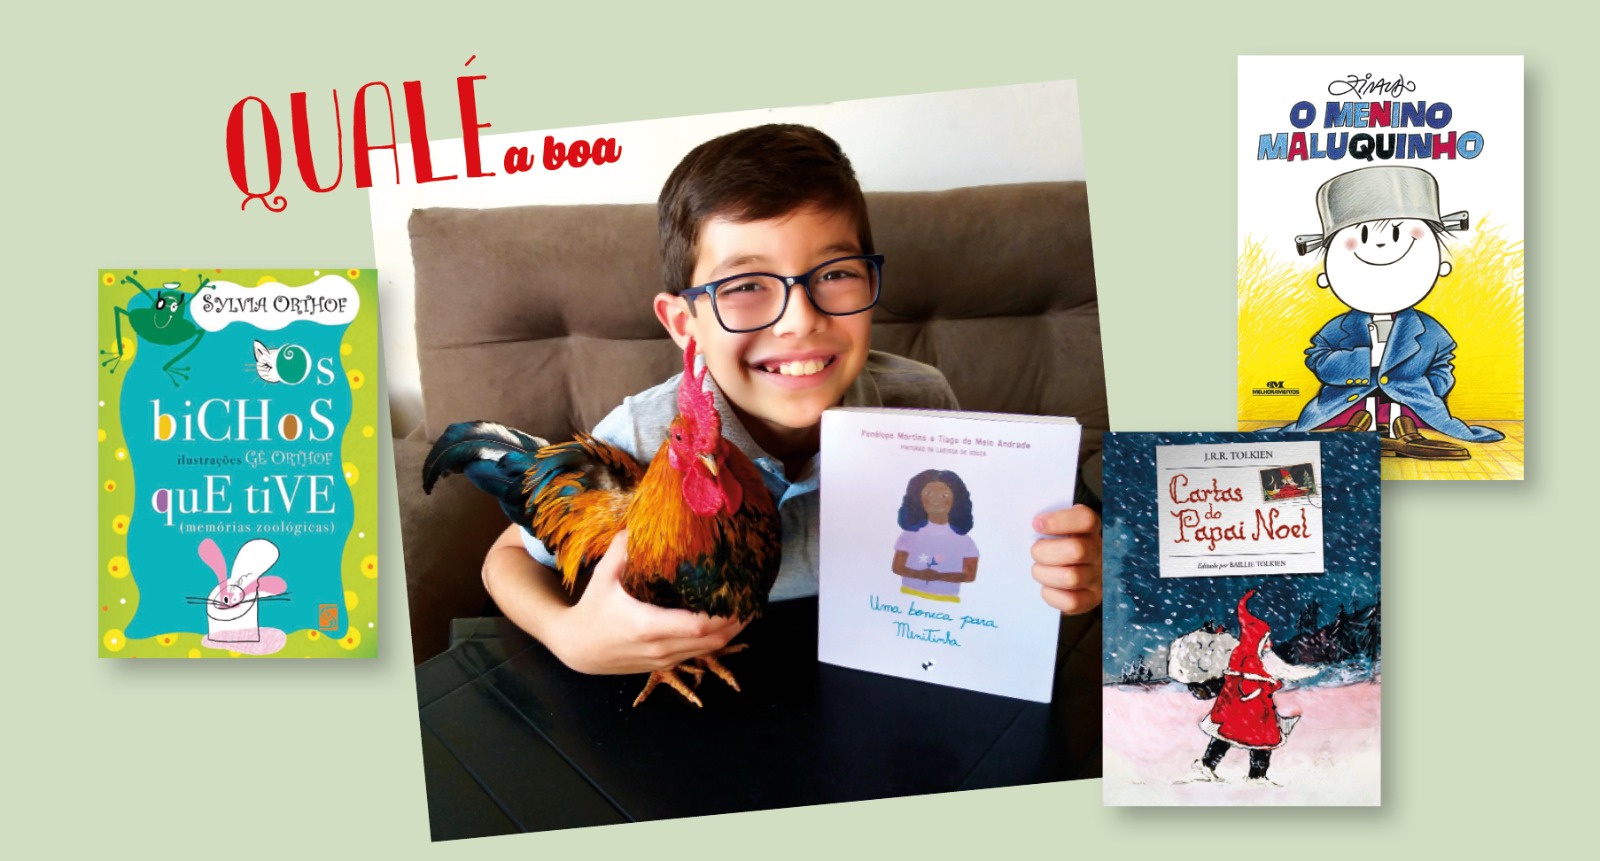 Imagem Qualé a boa: Gustavo, de 10 anos, já leu mais de mil livros